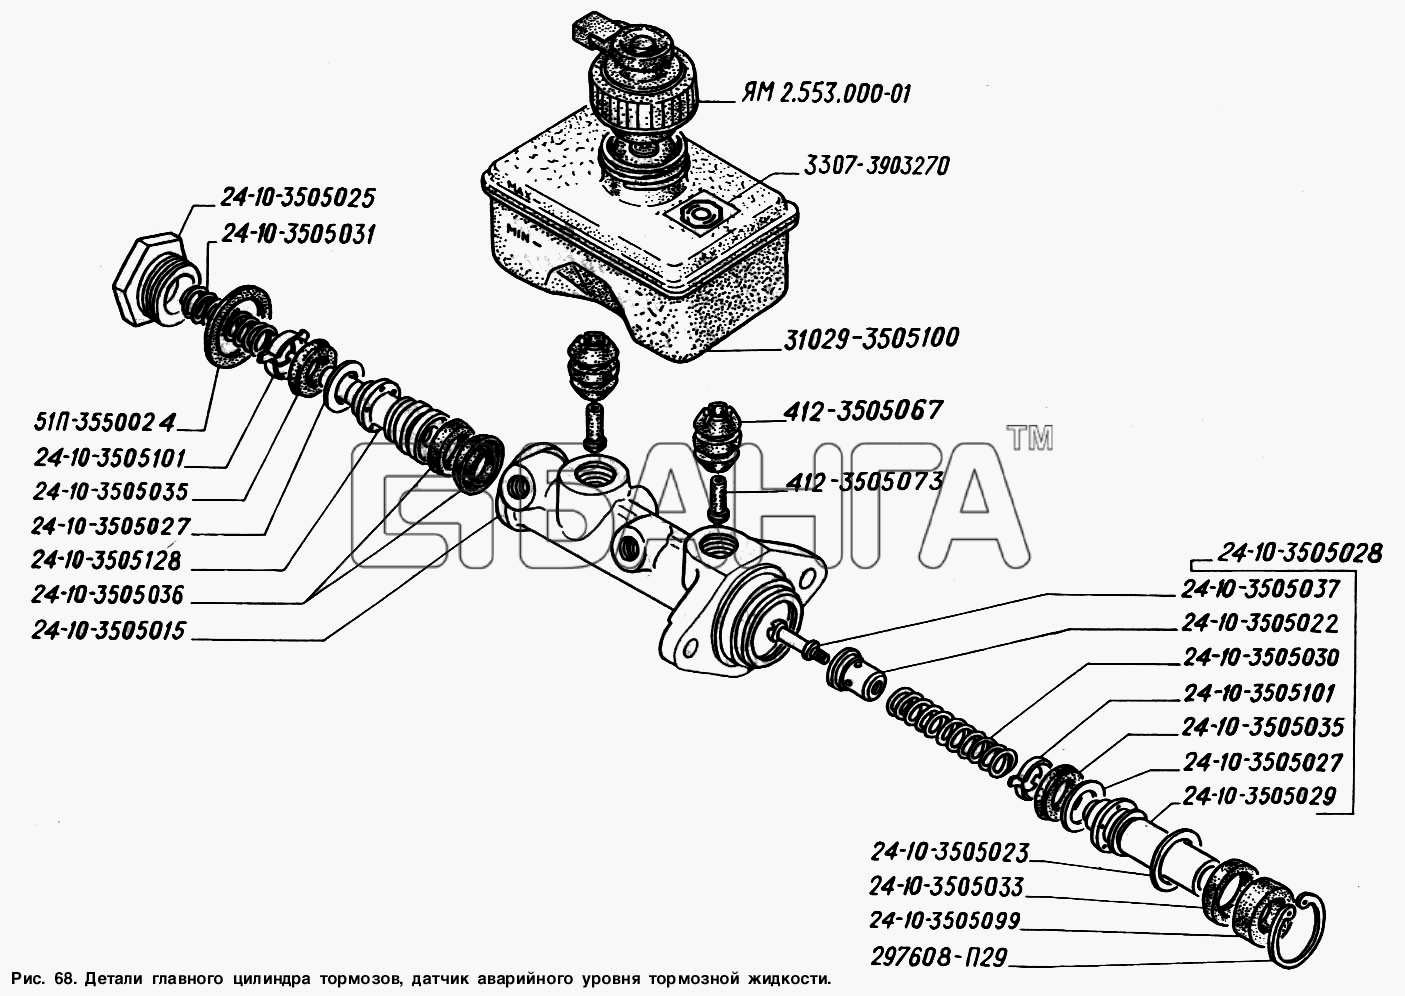 ГАЗ ГАЗ-2217 (Соболь) Схема Детали главного цилиндра тормозов датчик